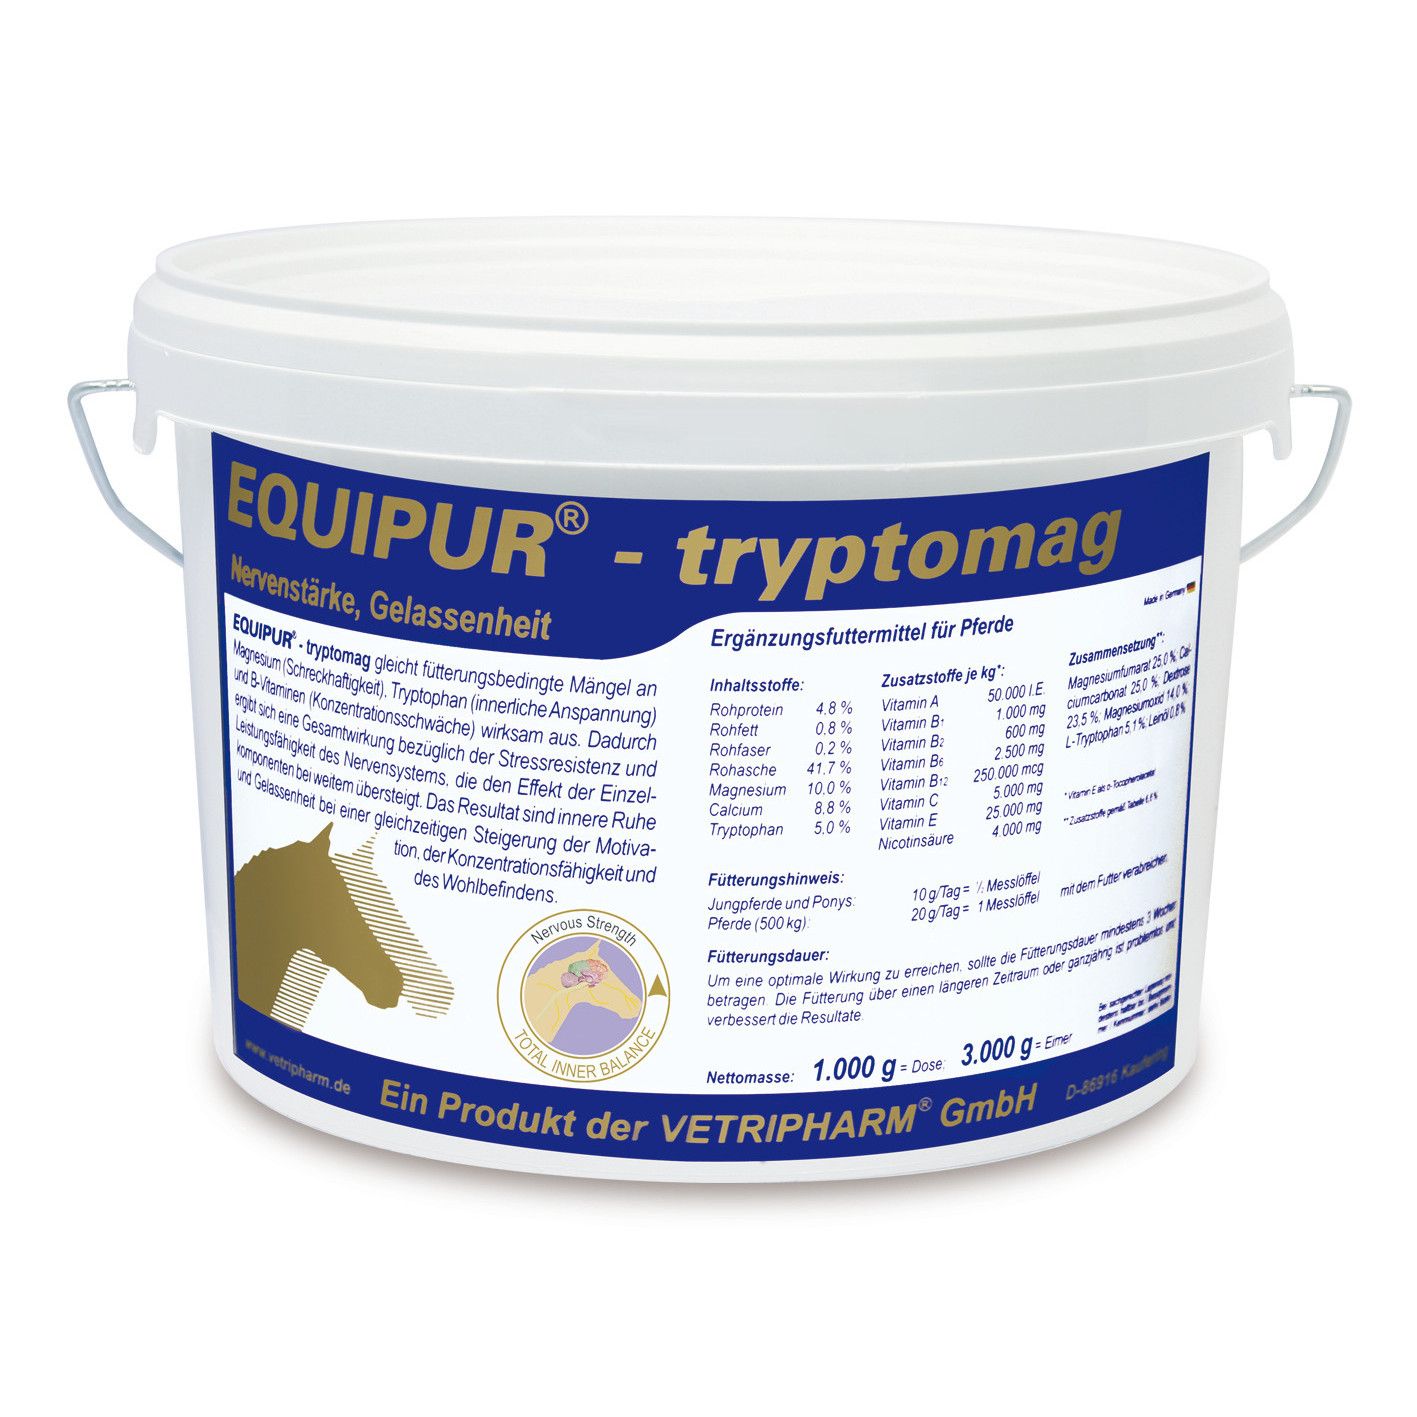 Vetripharm Equipur tryptomag